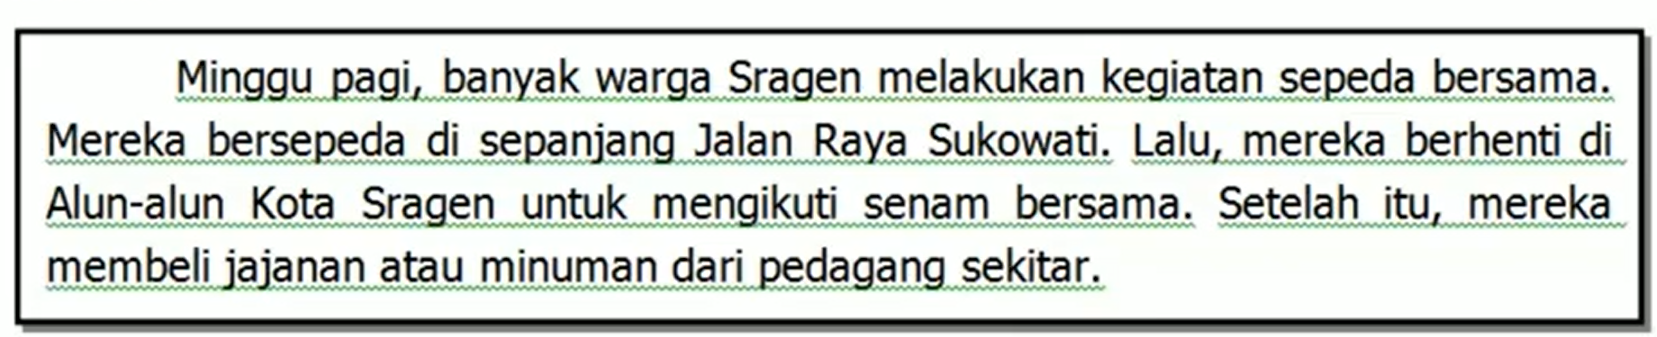 Contoh Soal Ujian Sekolah Bahasa Indonesia Kelas 6 SD K13 Dilengkapi Kunci Jawaban Terbaru 2021